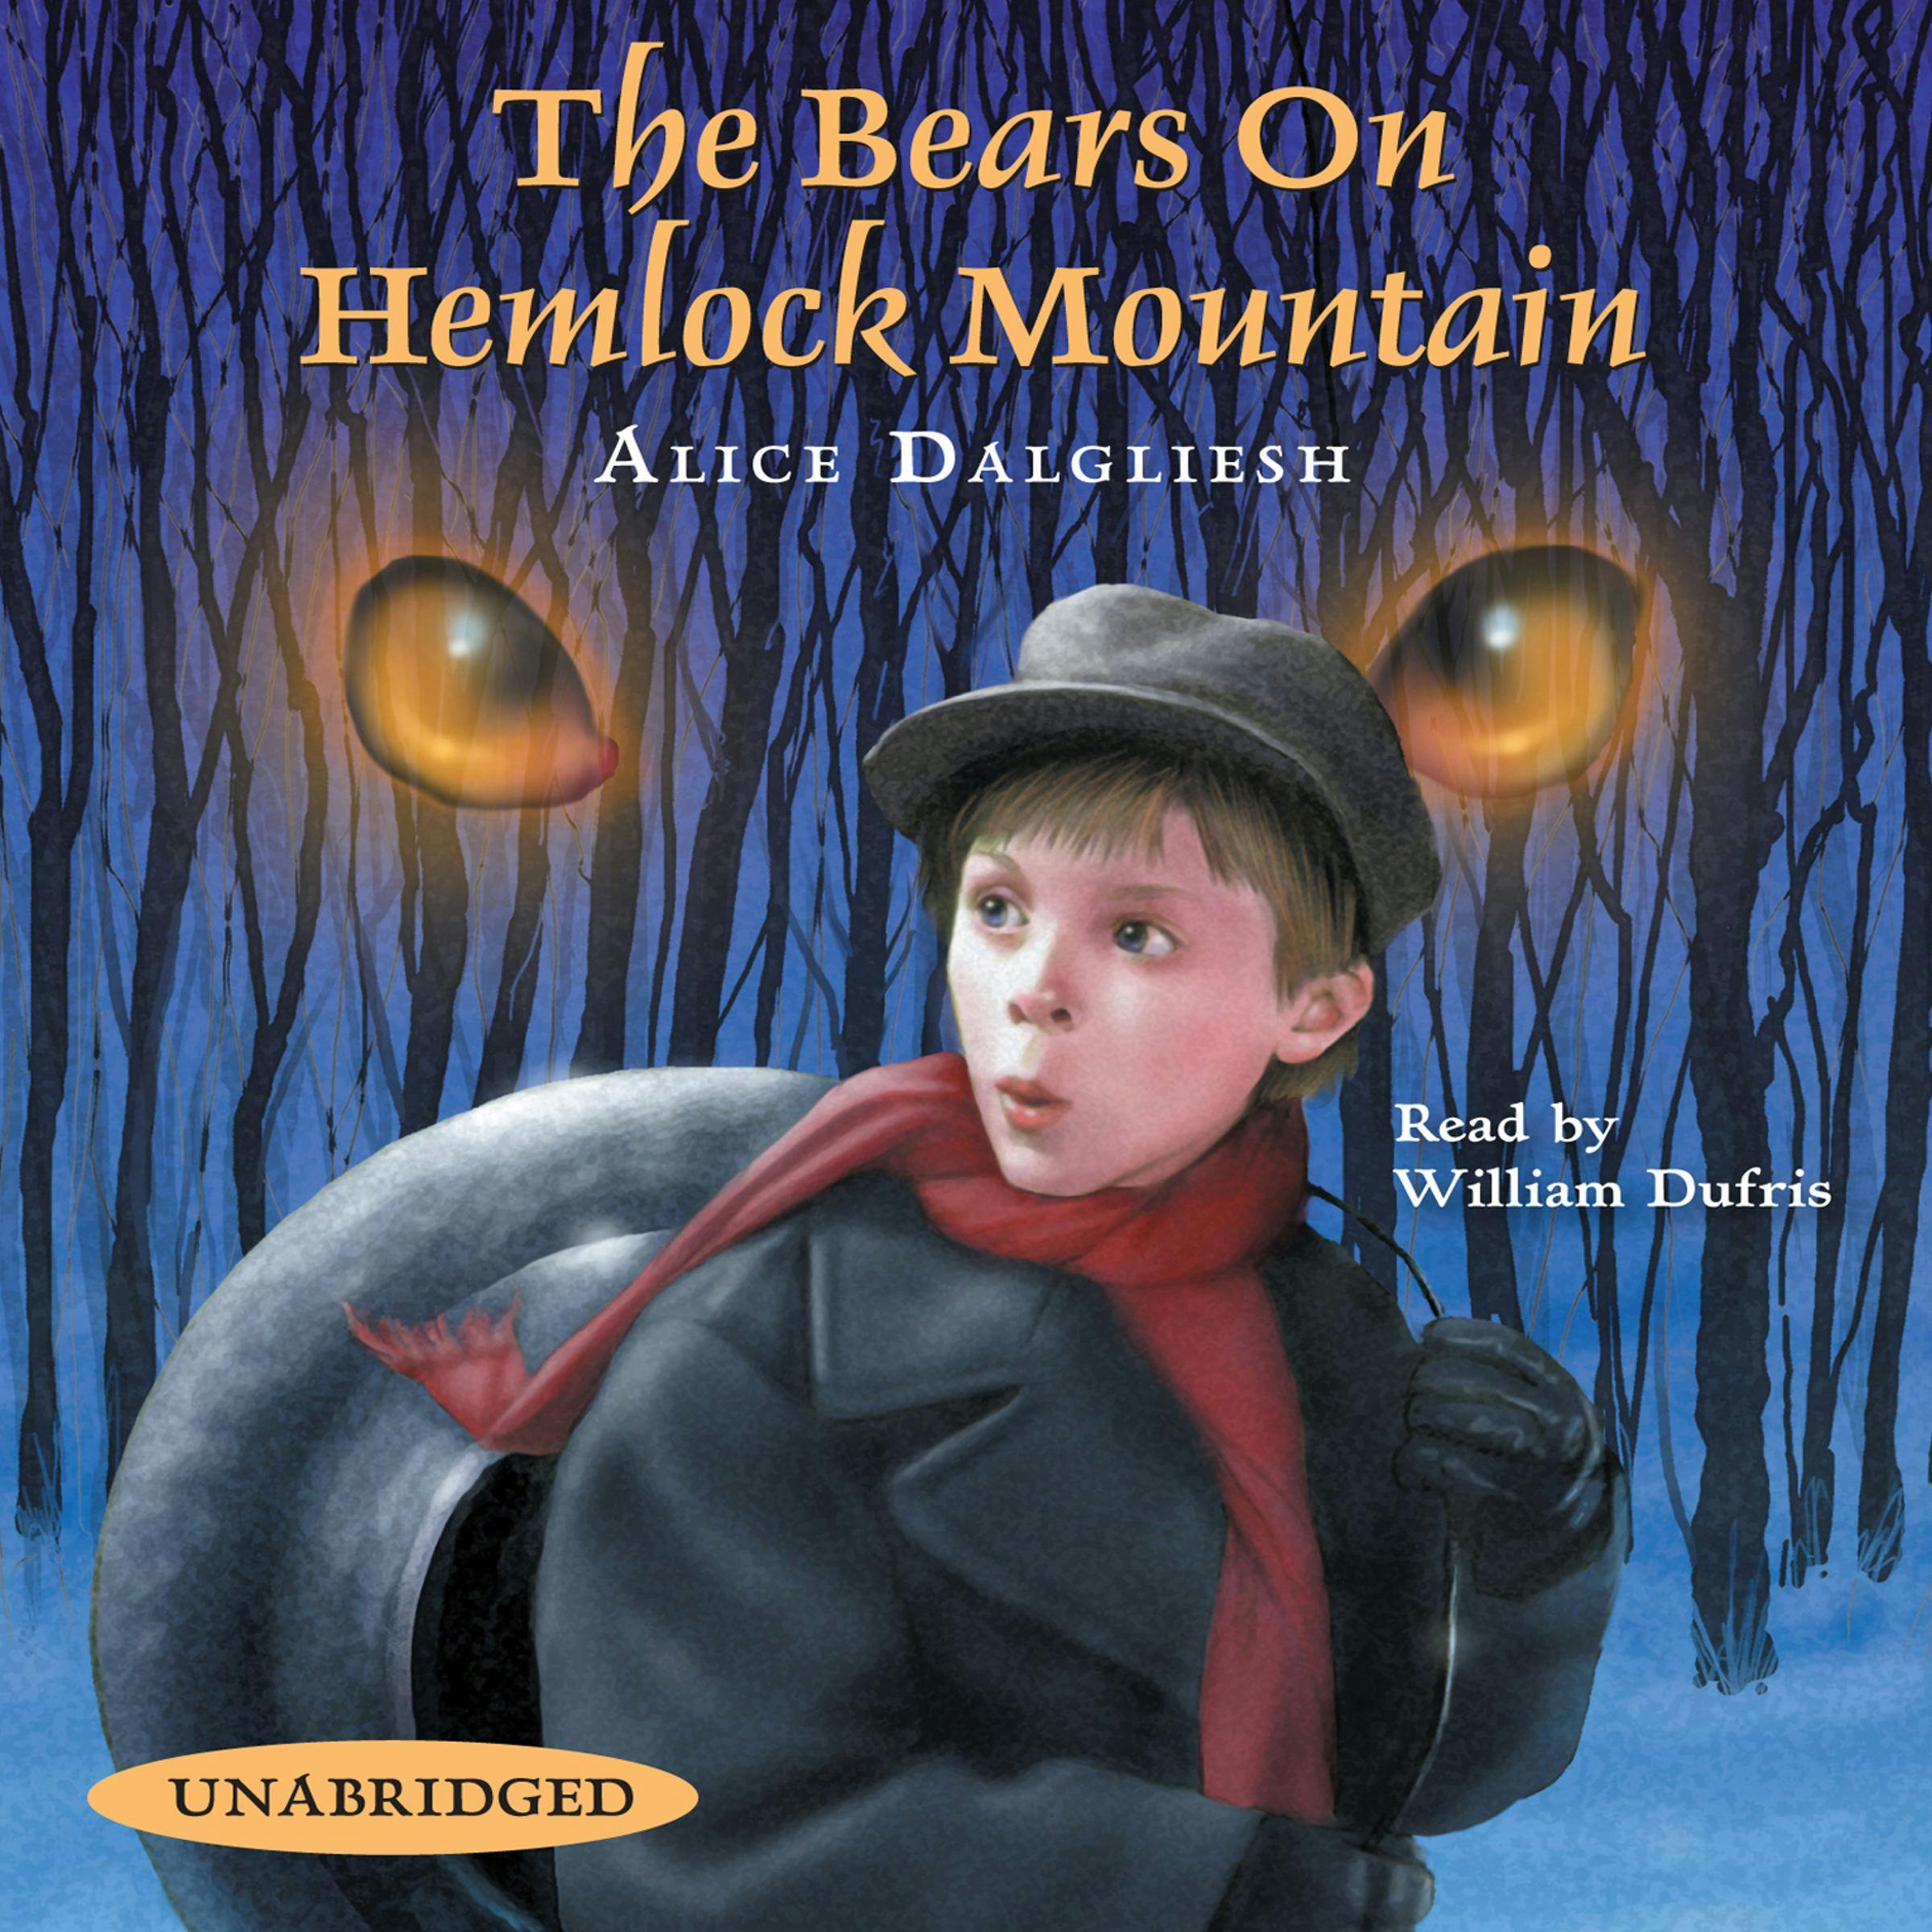 The Bears on Hemlock Mountain - Alice Dalgliesh